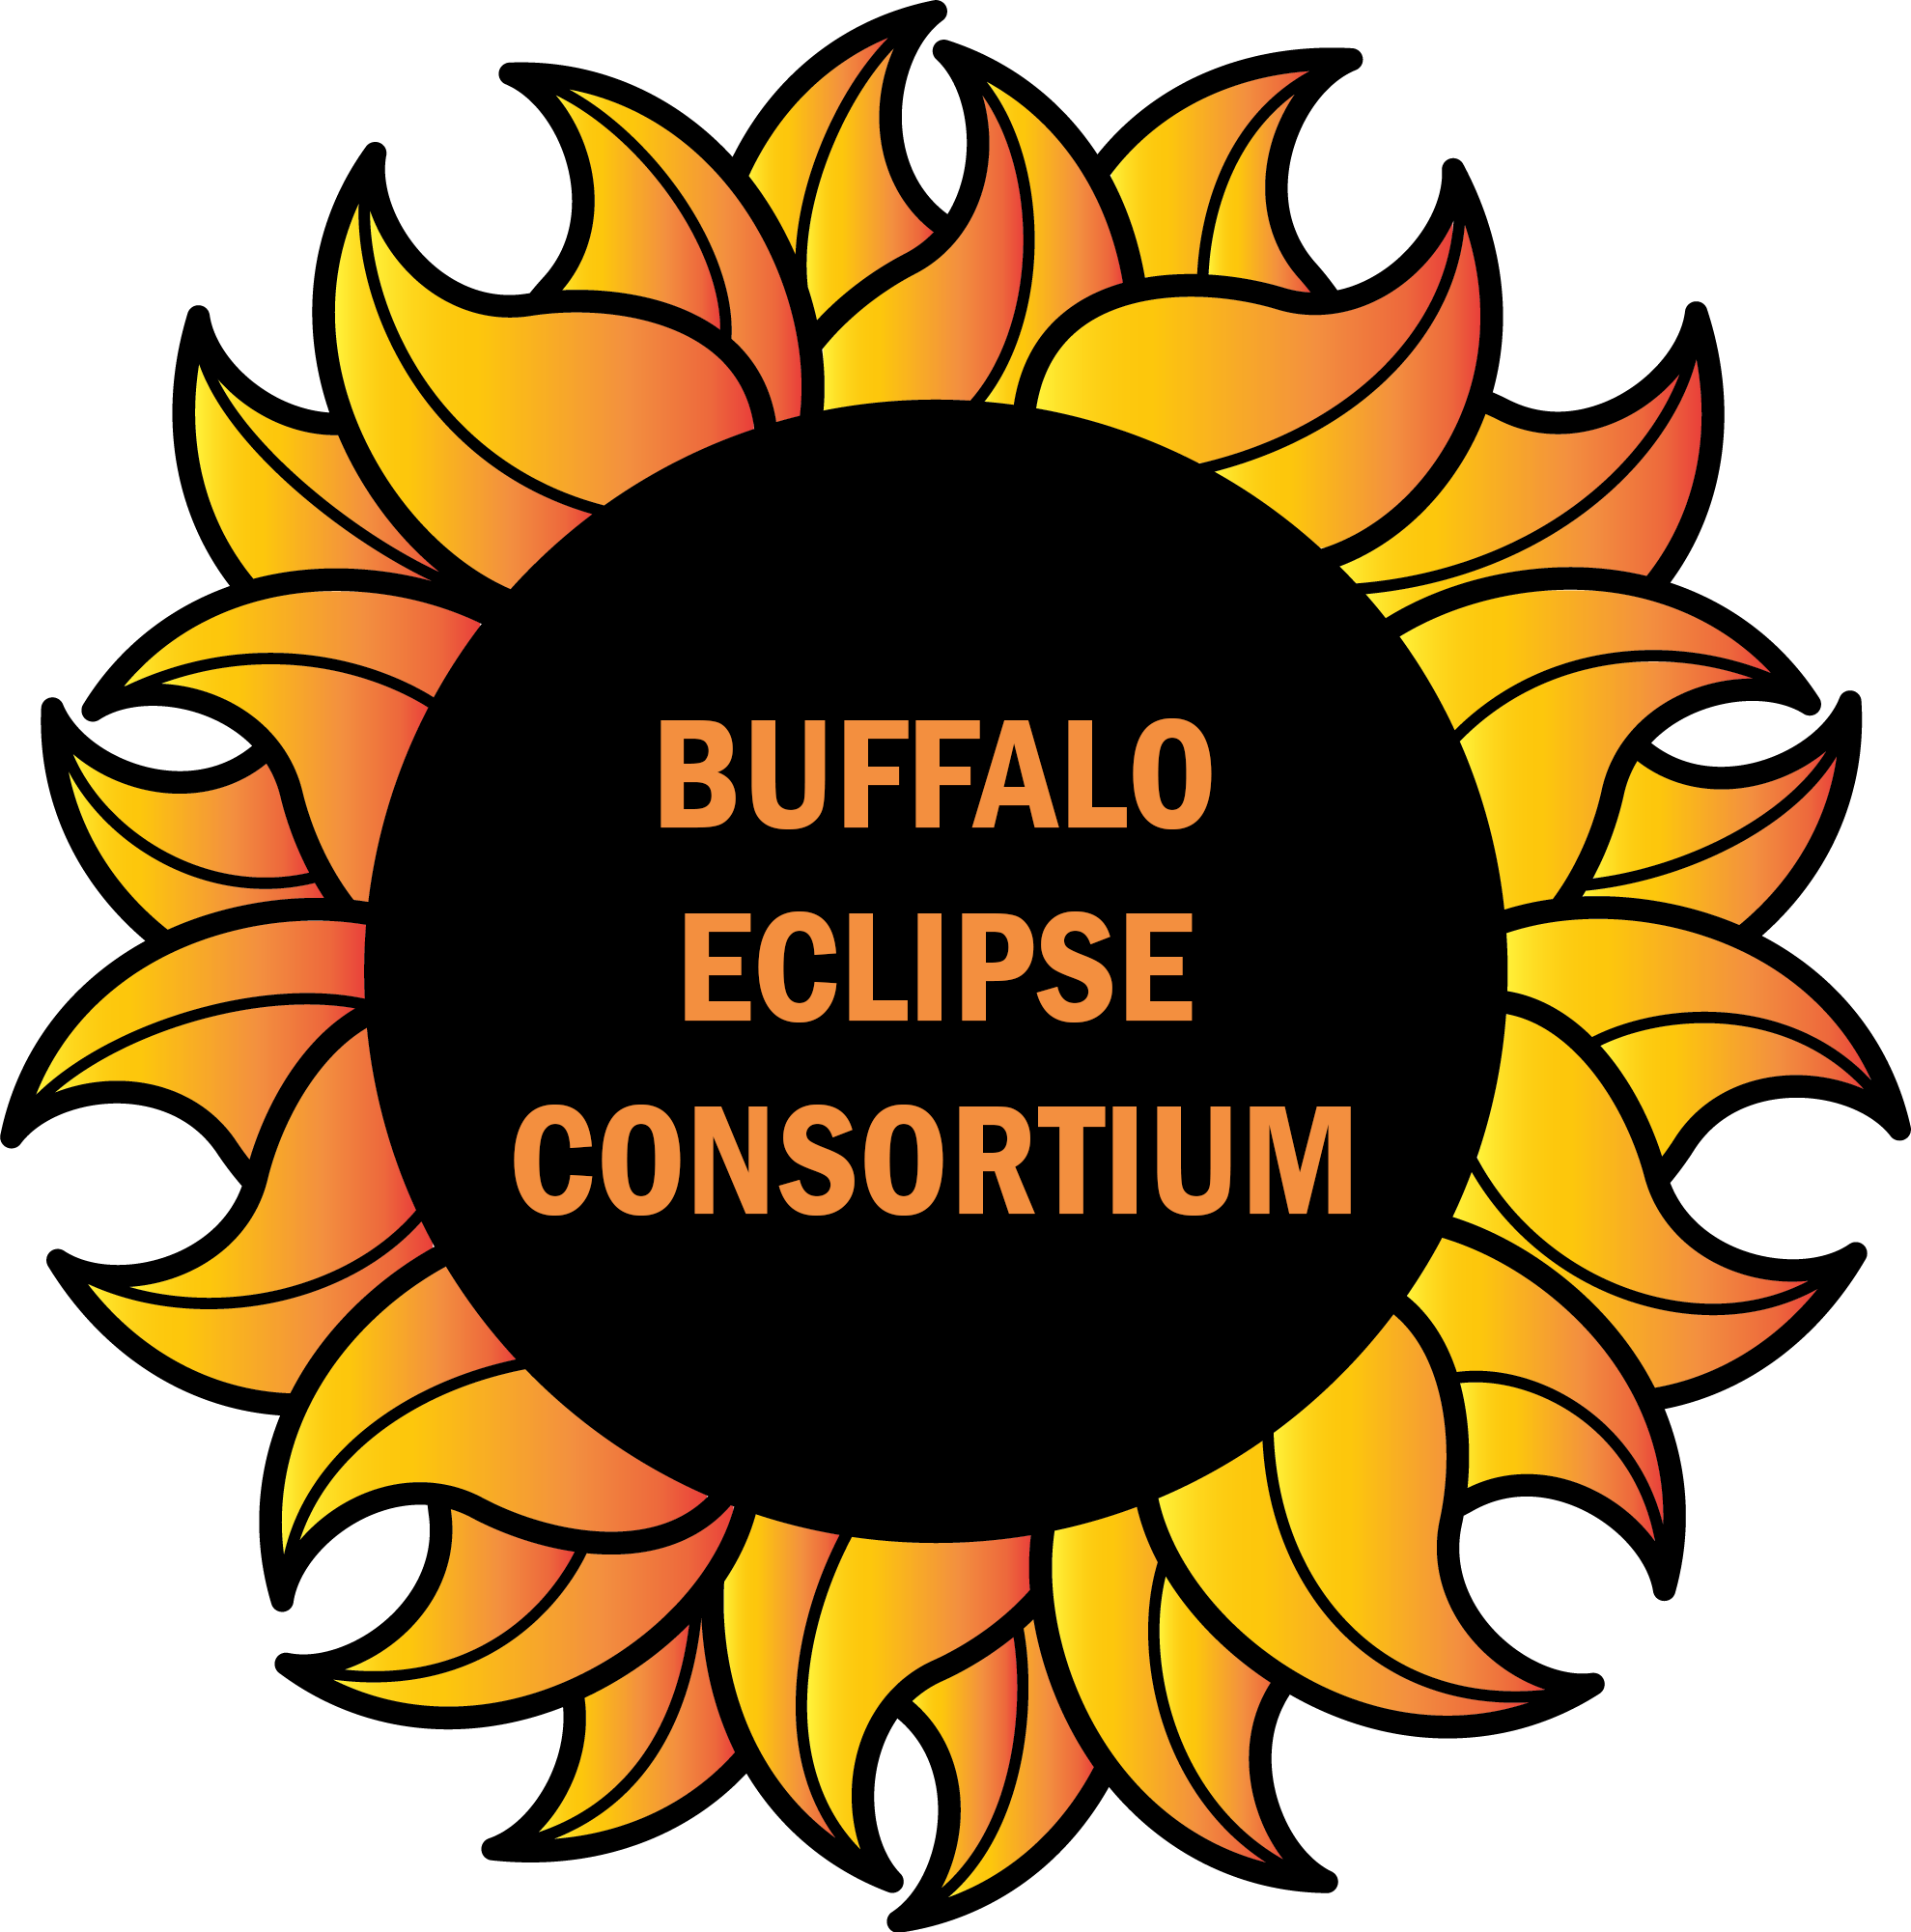 Buffalo Eclipse